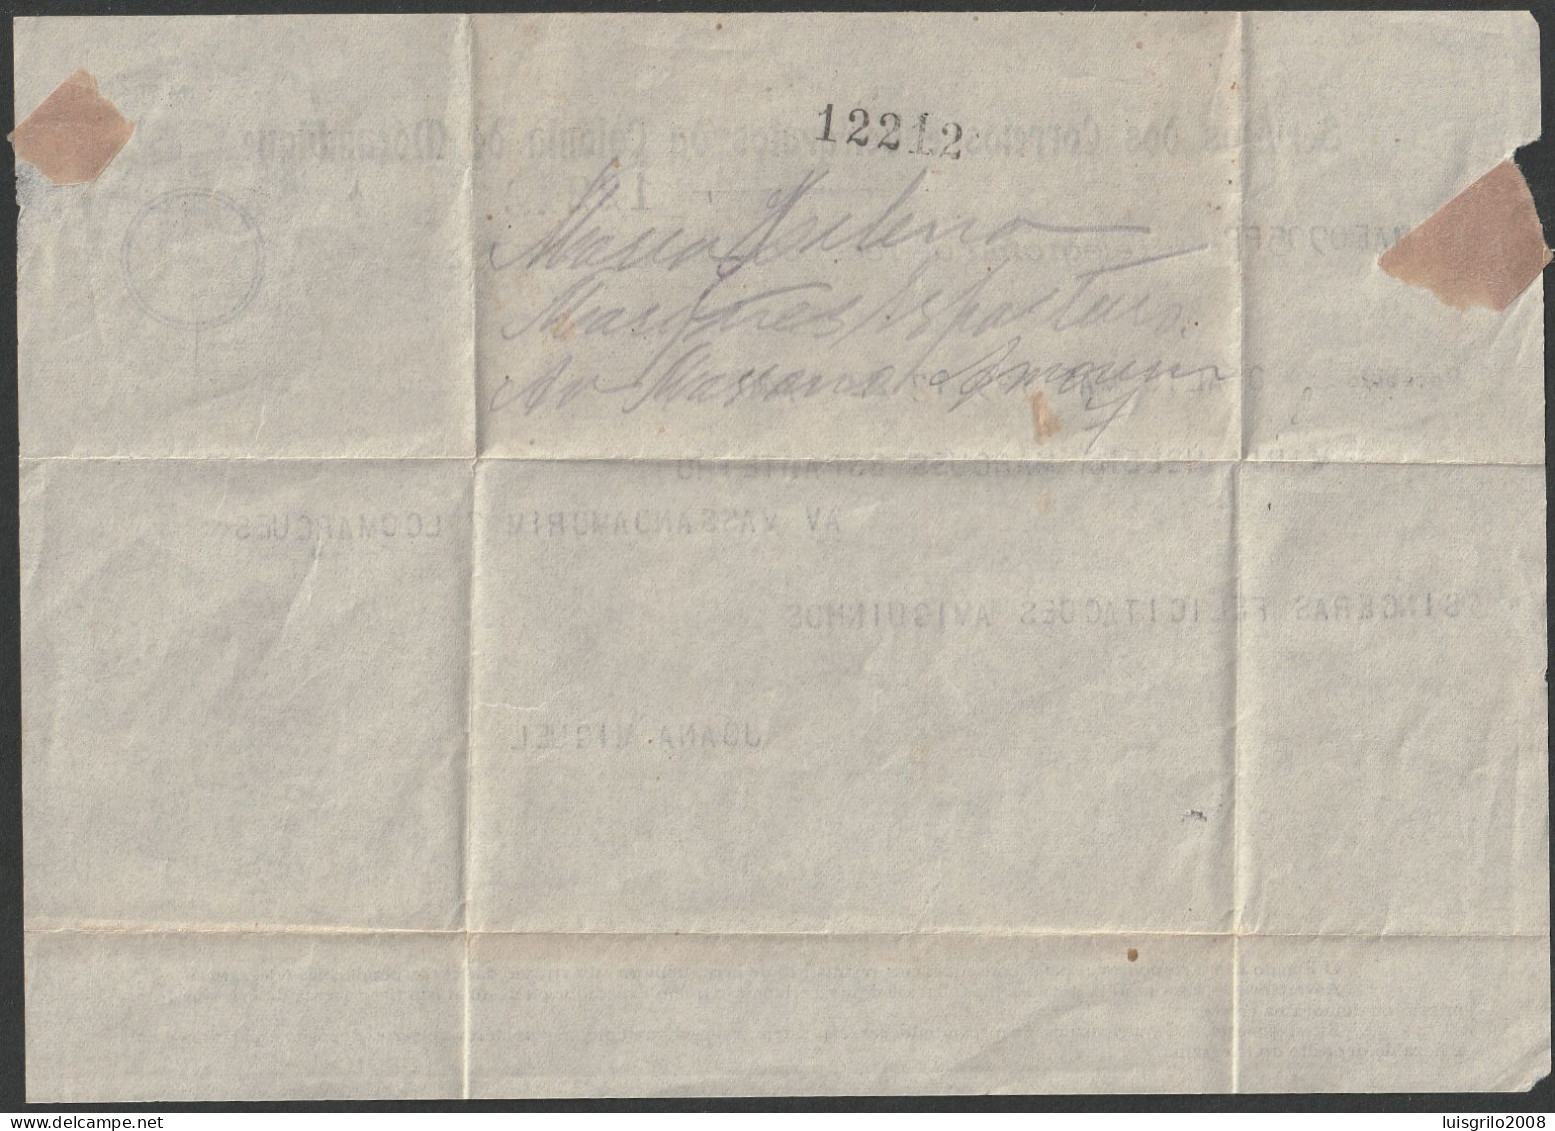 Telegram/ Telegrama De Recepção - Colónia De Moçambique > Lourenço Marques -|- Postmark - Lourenço Marques. 1947 - Briefe U. Dokumente